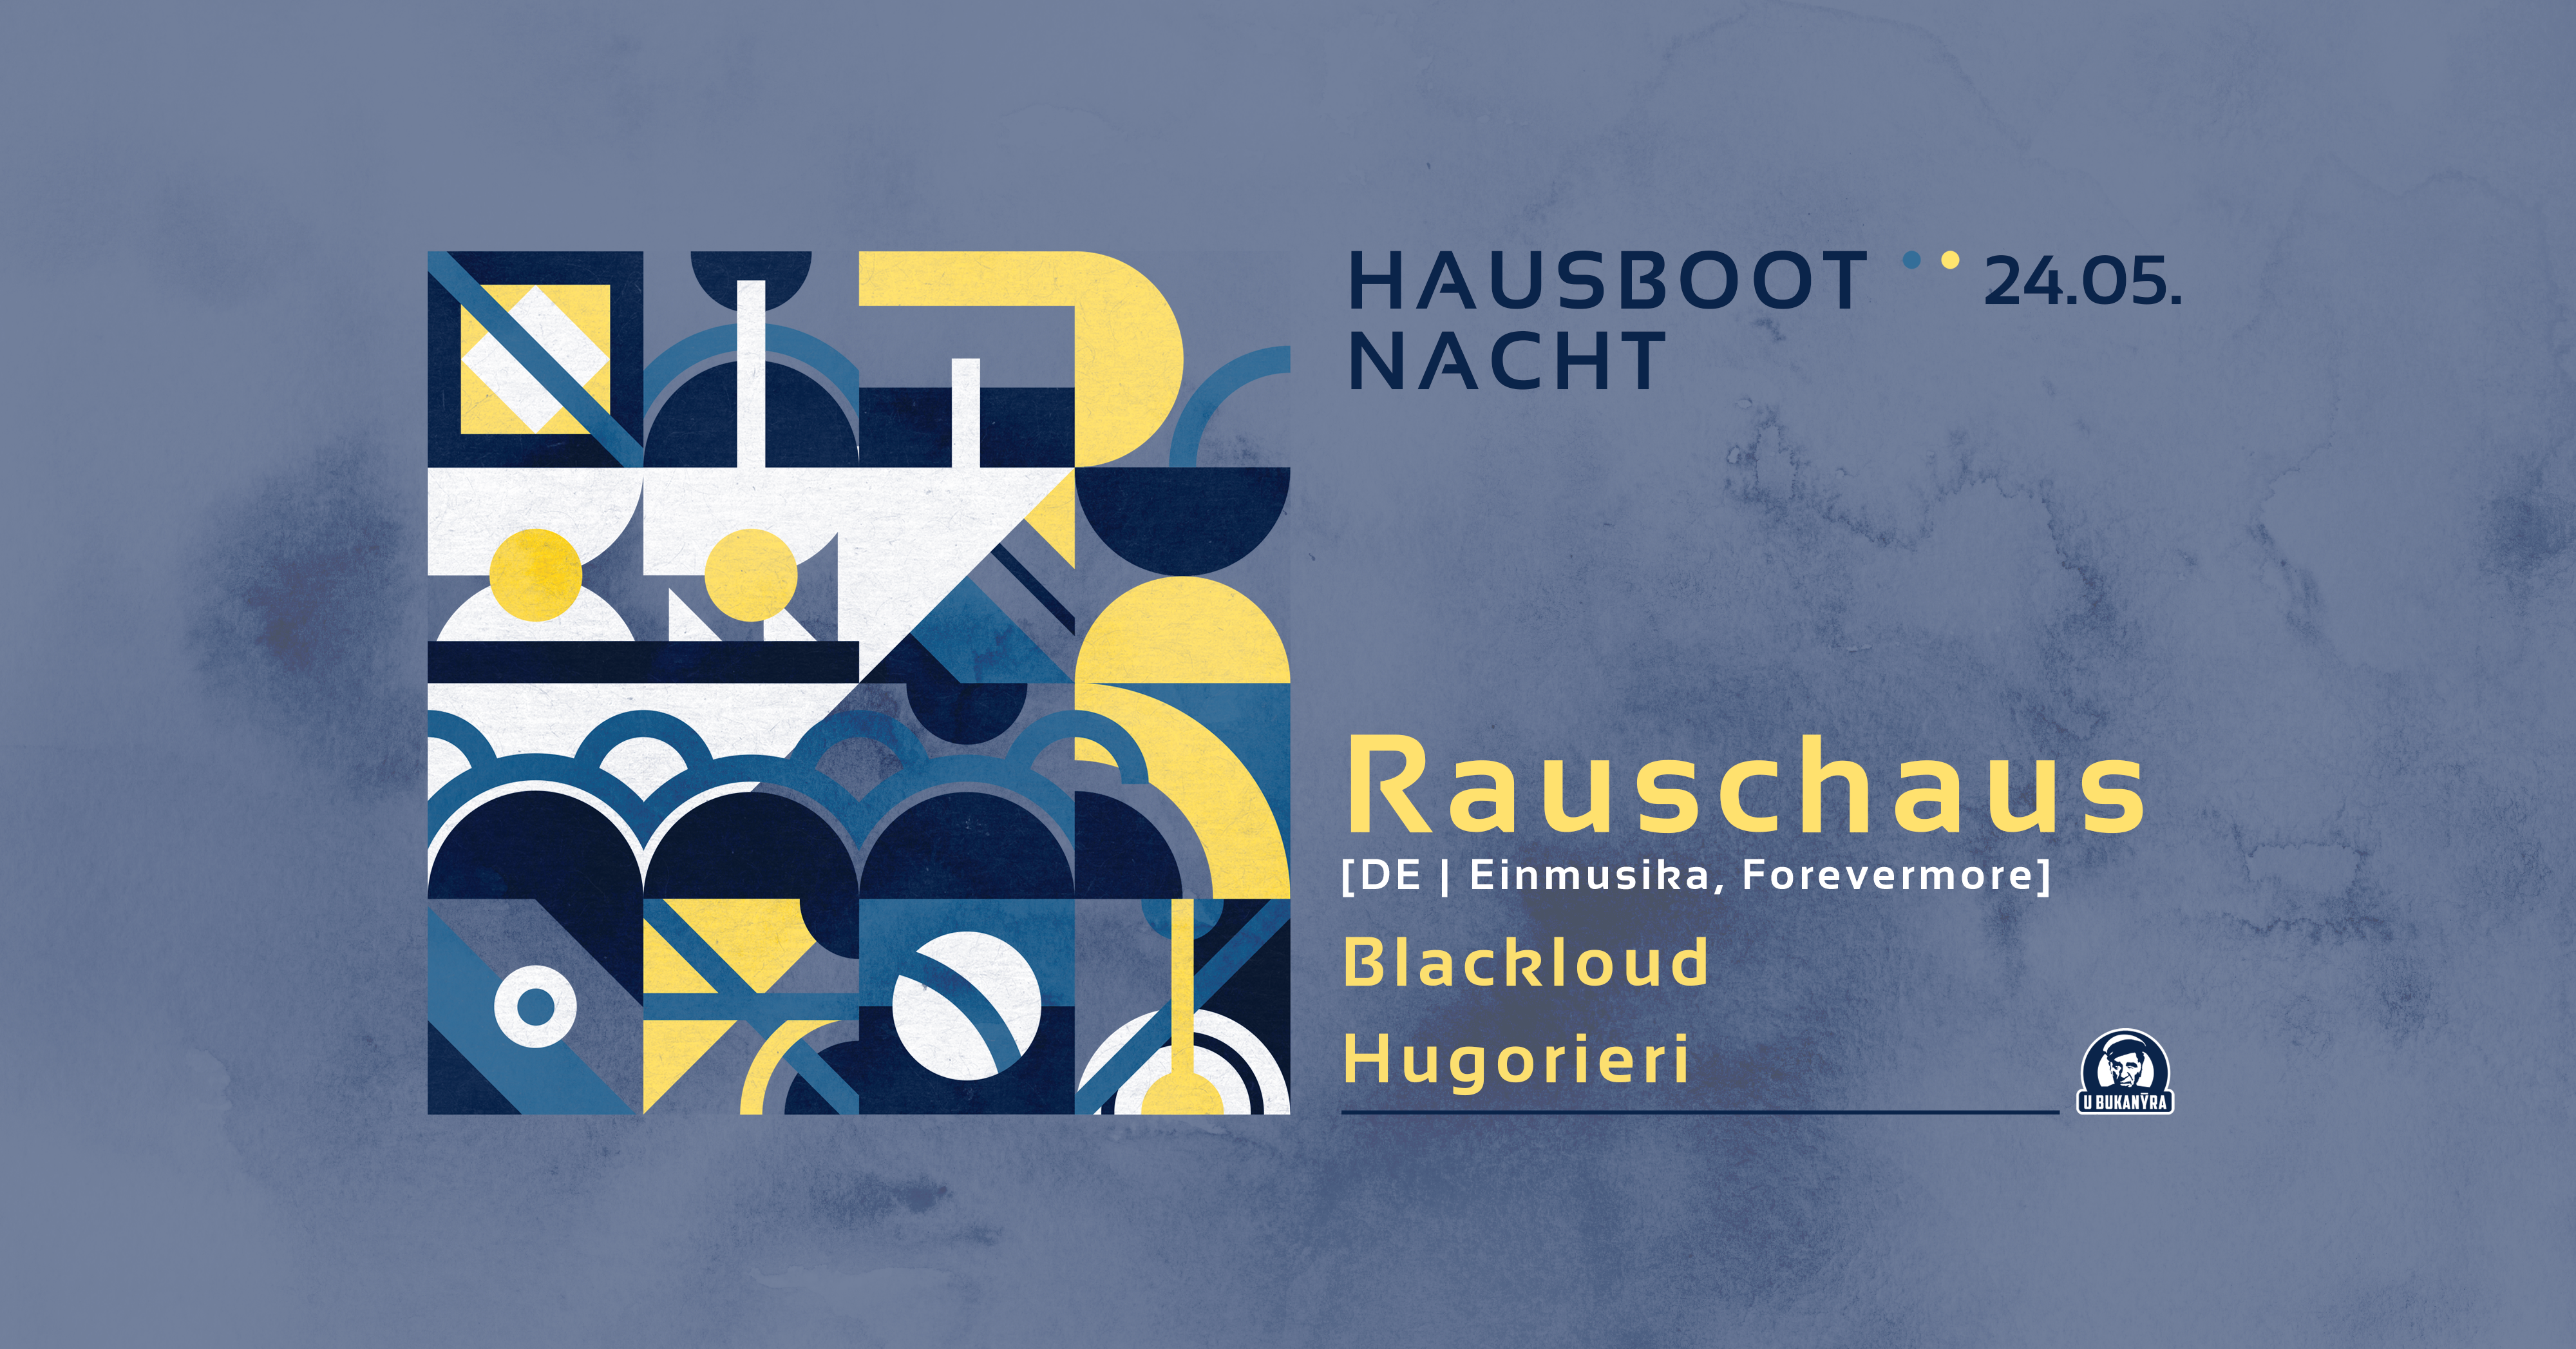 HAUSBOOT NACHT - w. Rauschhaus /DE, Einmusika, Forevermore/ - フライヤー表